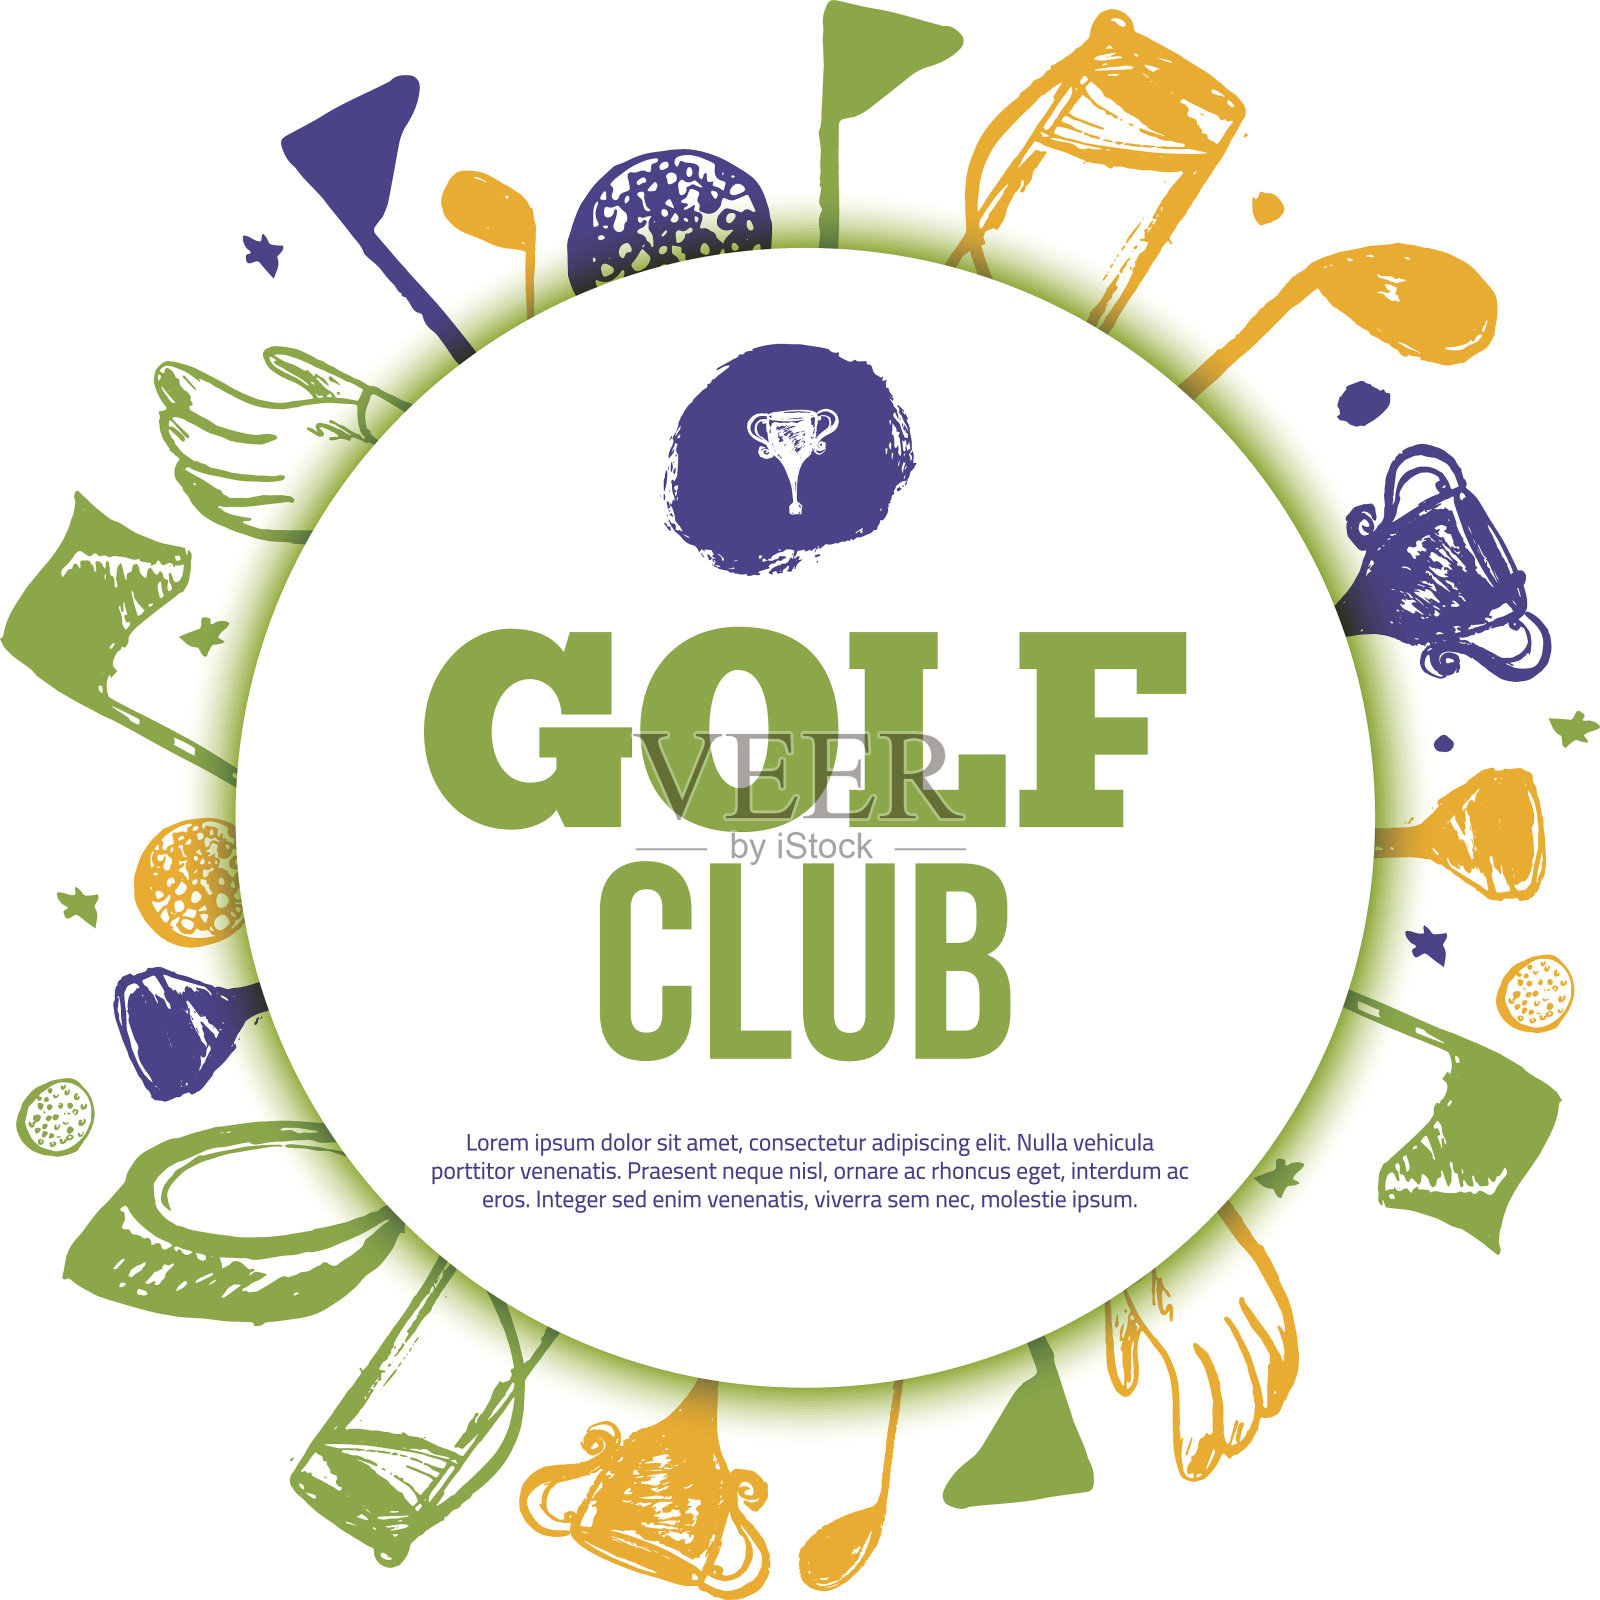 高尔夫球圈旗帜比赛邀请与手绘垃圾元素。易于编辑您的晋升设计模板素材